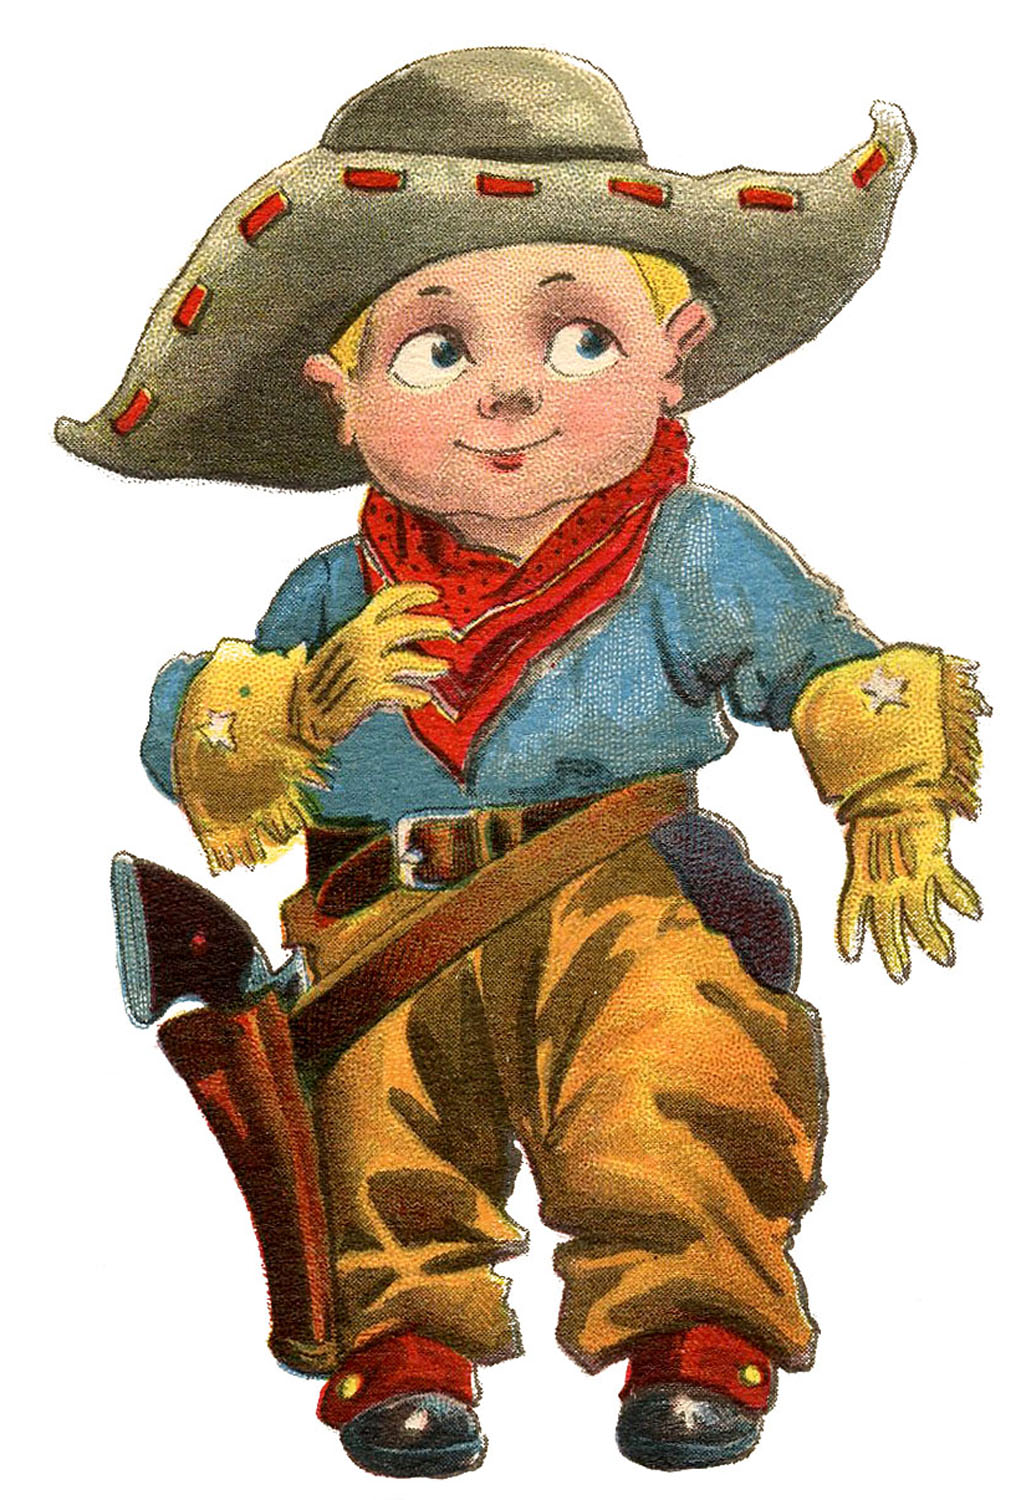 Vintage Clip Art - Cute LIttle Cowboy - The Graphics Fairy